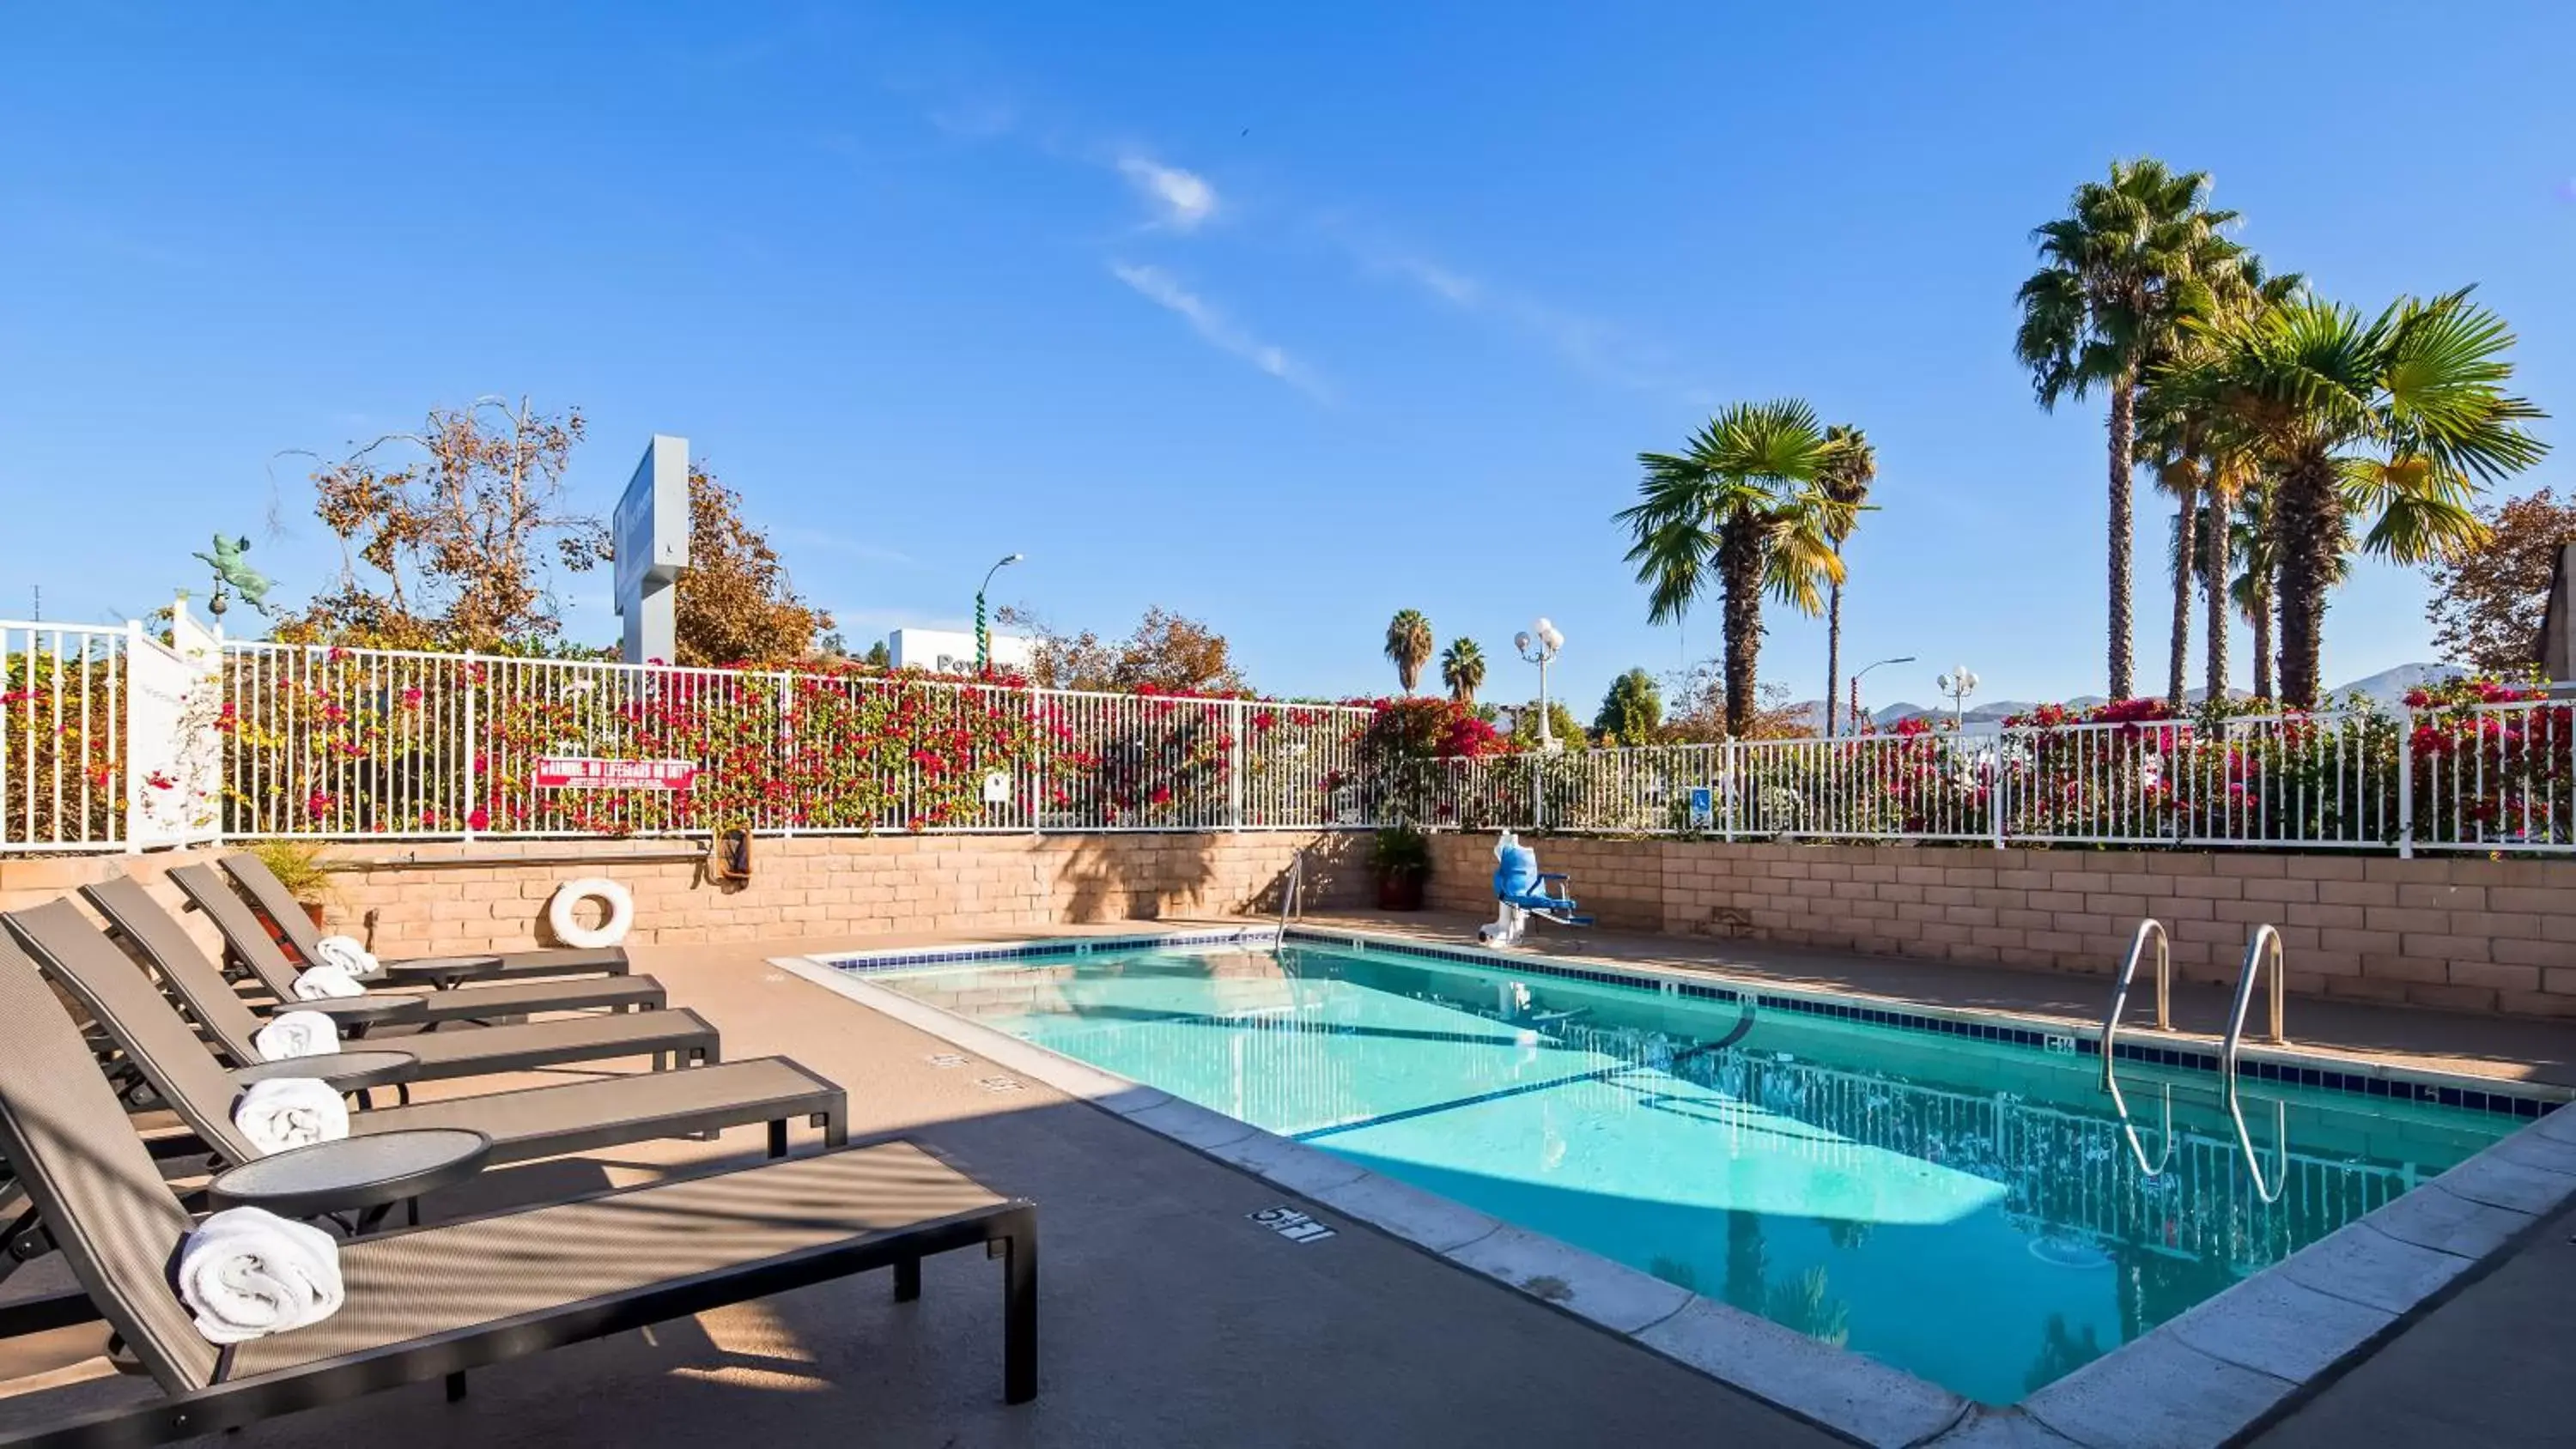 Swimming Pool in Best Western Poway/San Diego Hotel